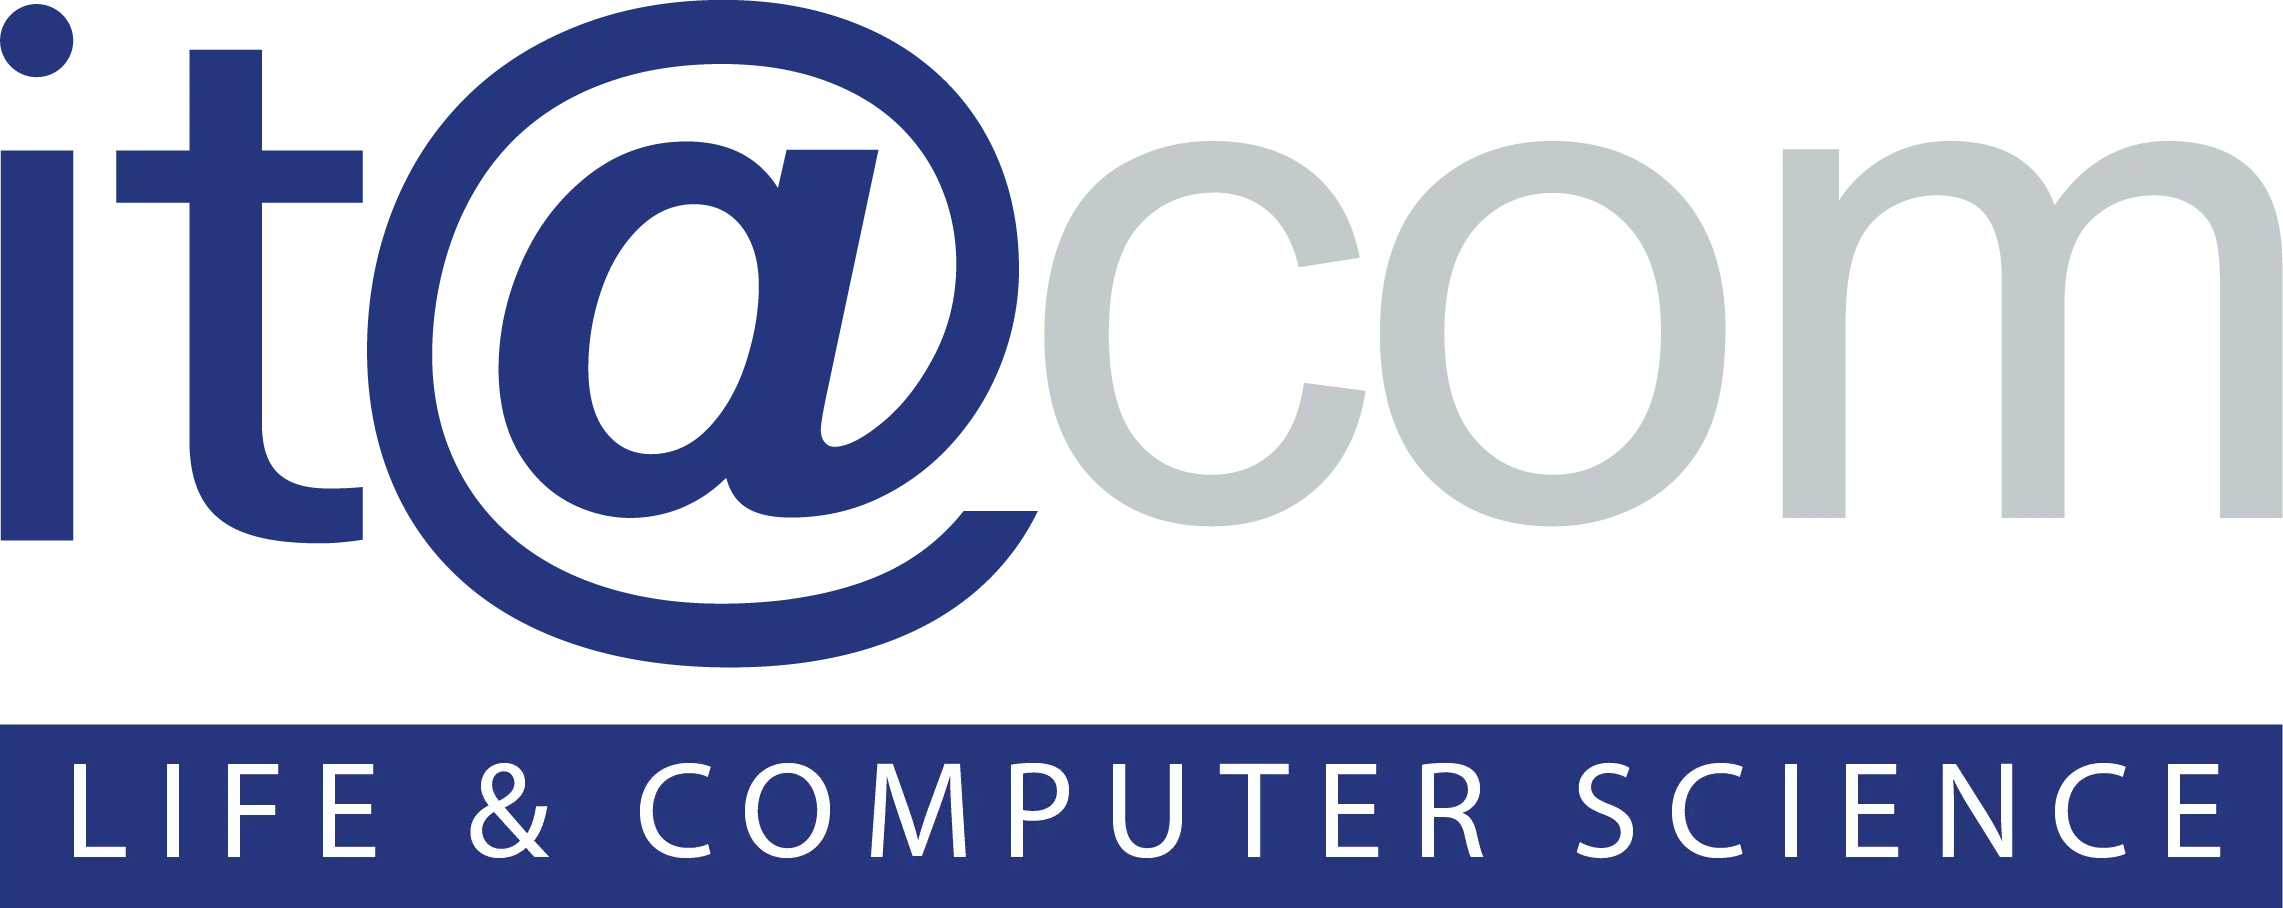 logo itacom compute life & science